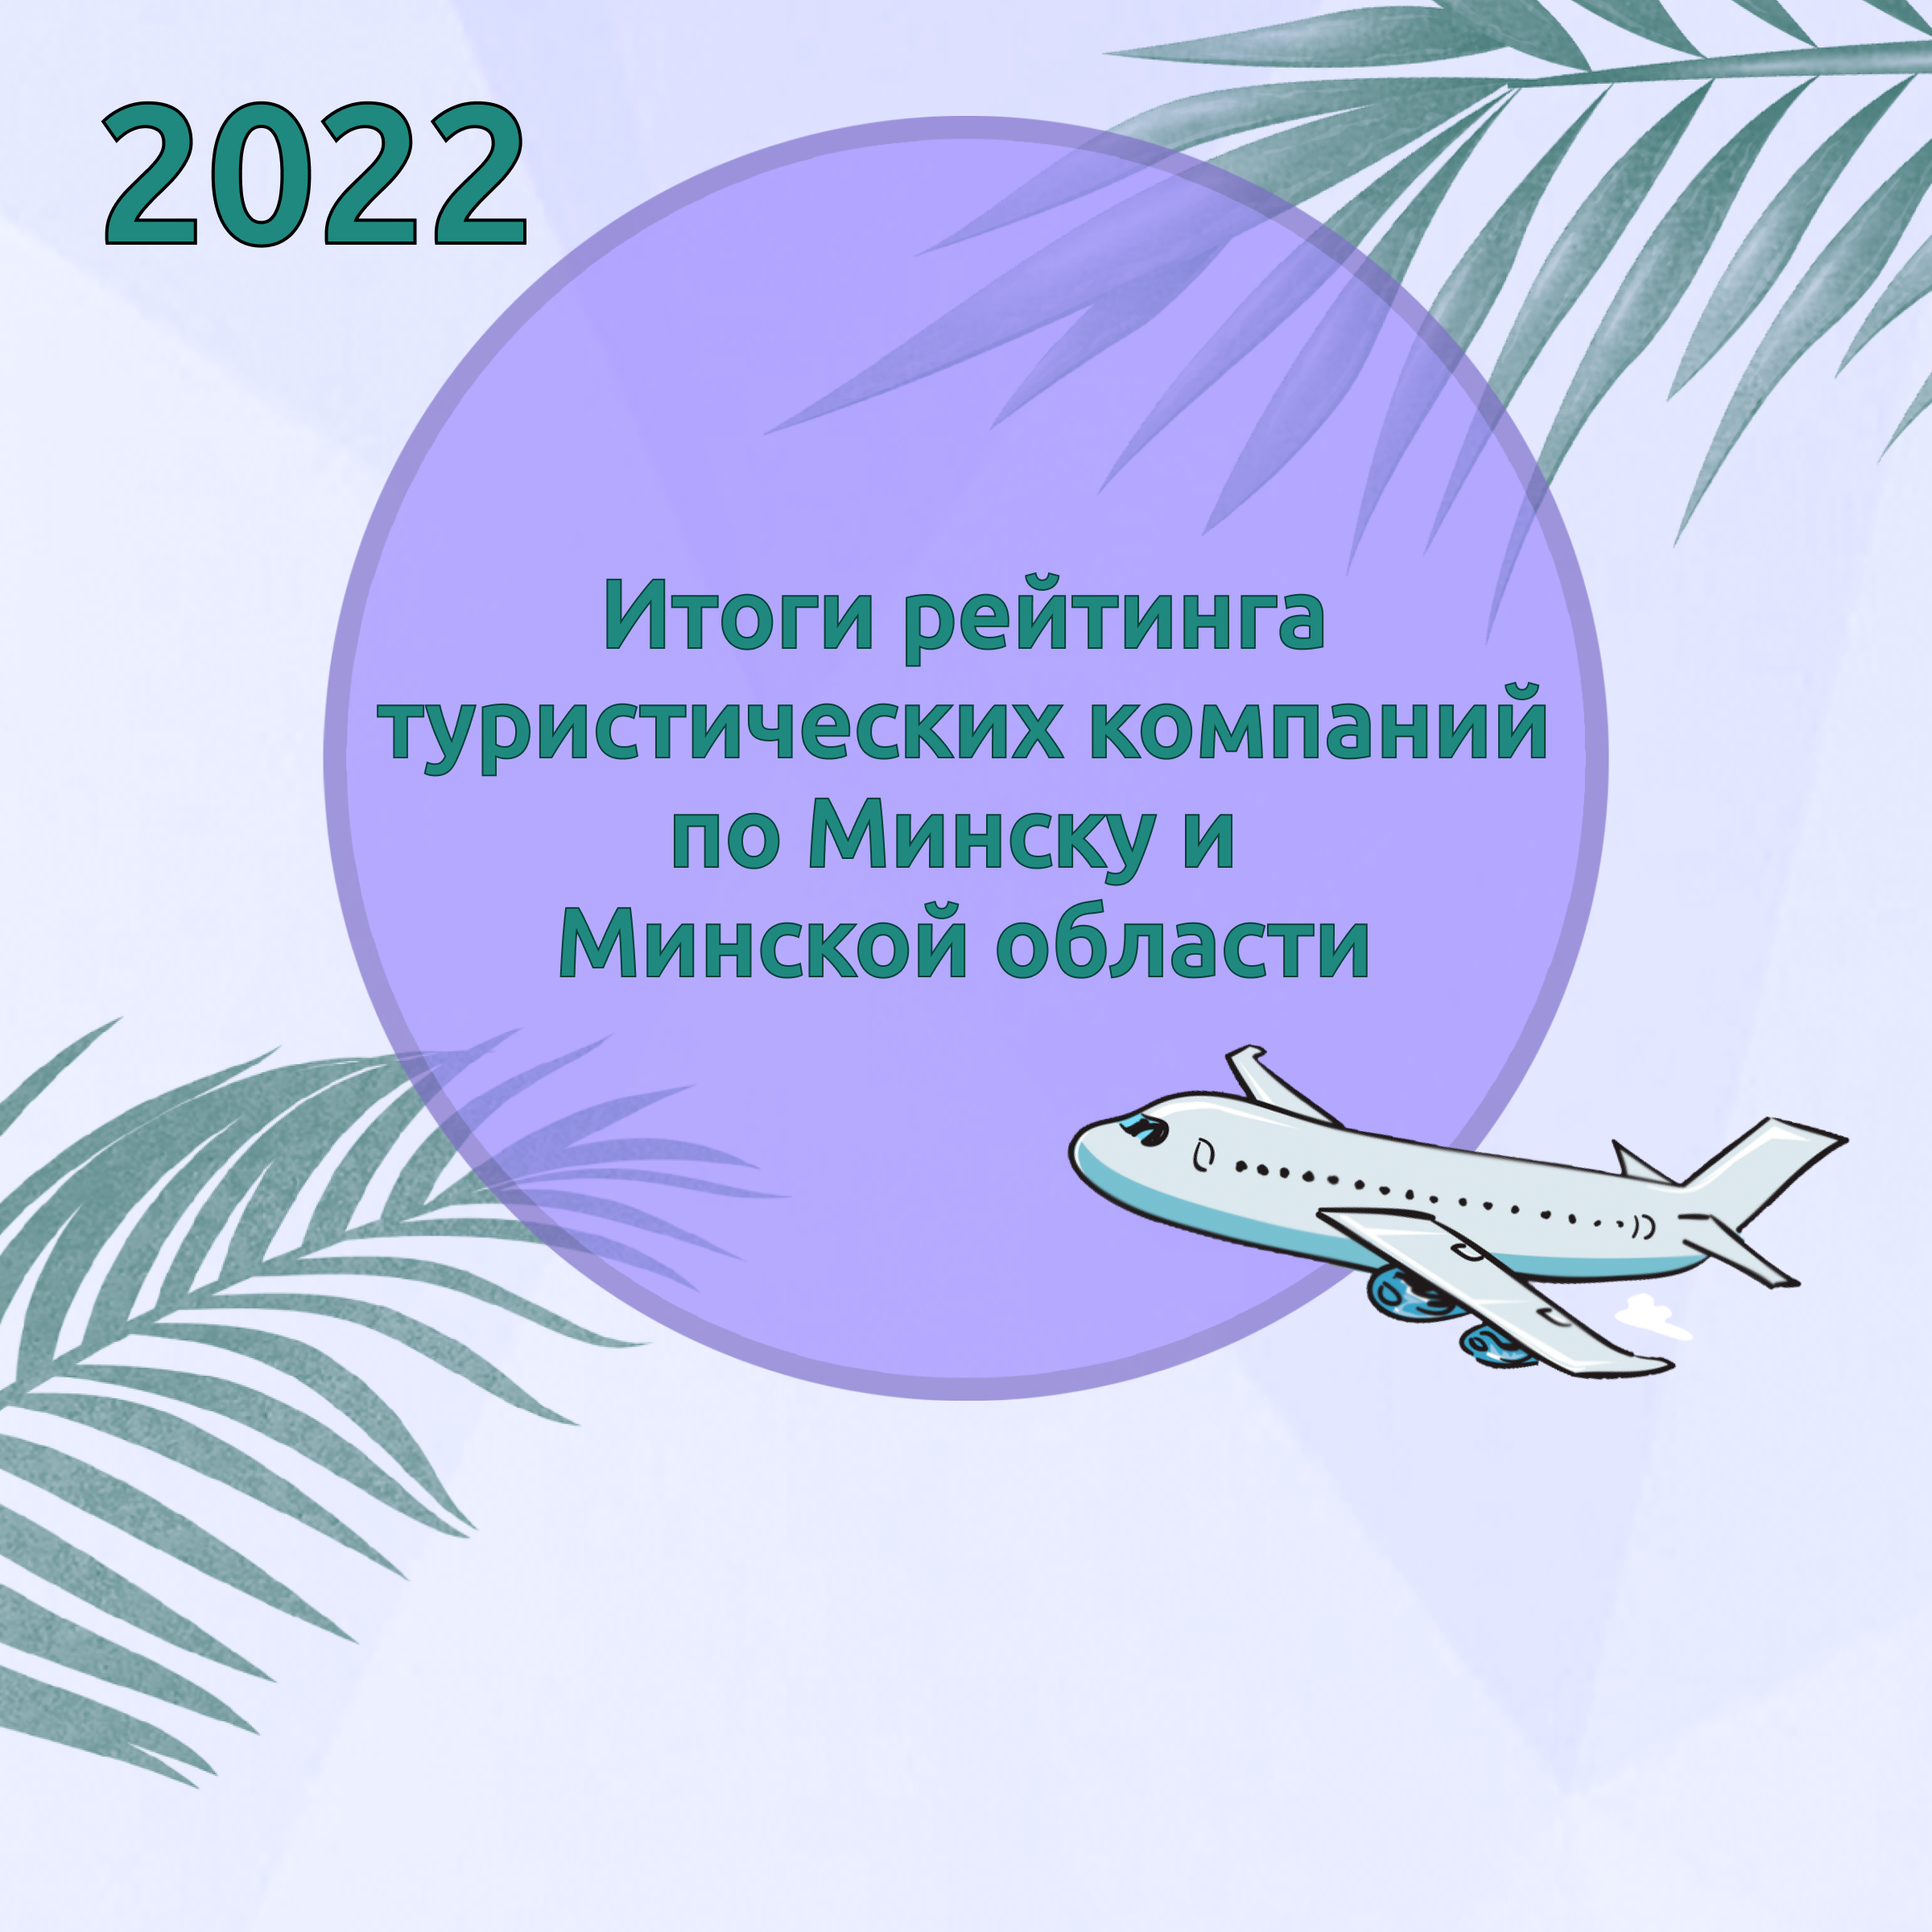 Итоги рейтинга туристических компаний по Минску и Минской области за 2022 год